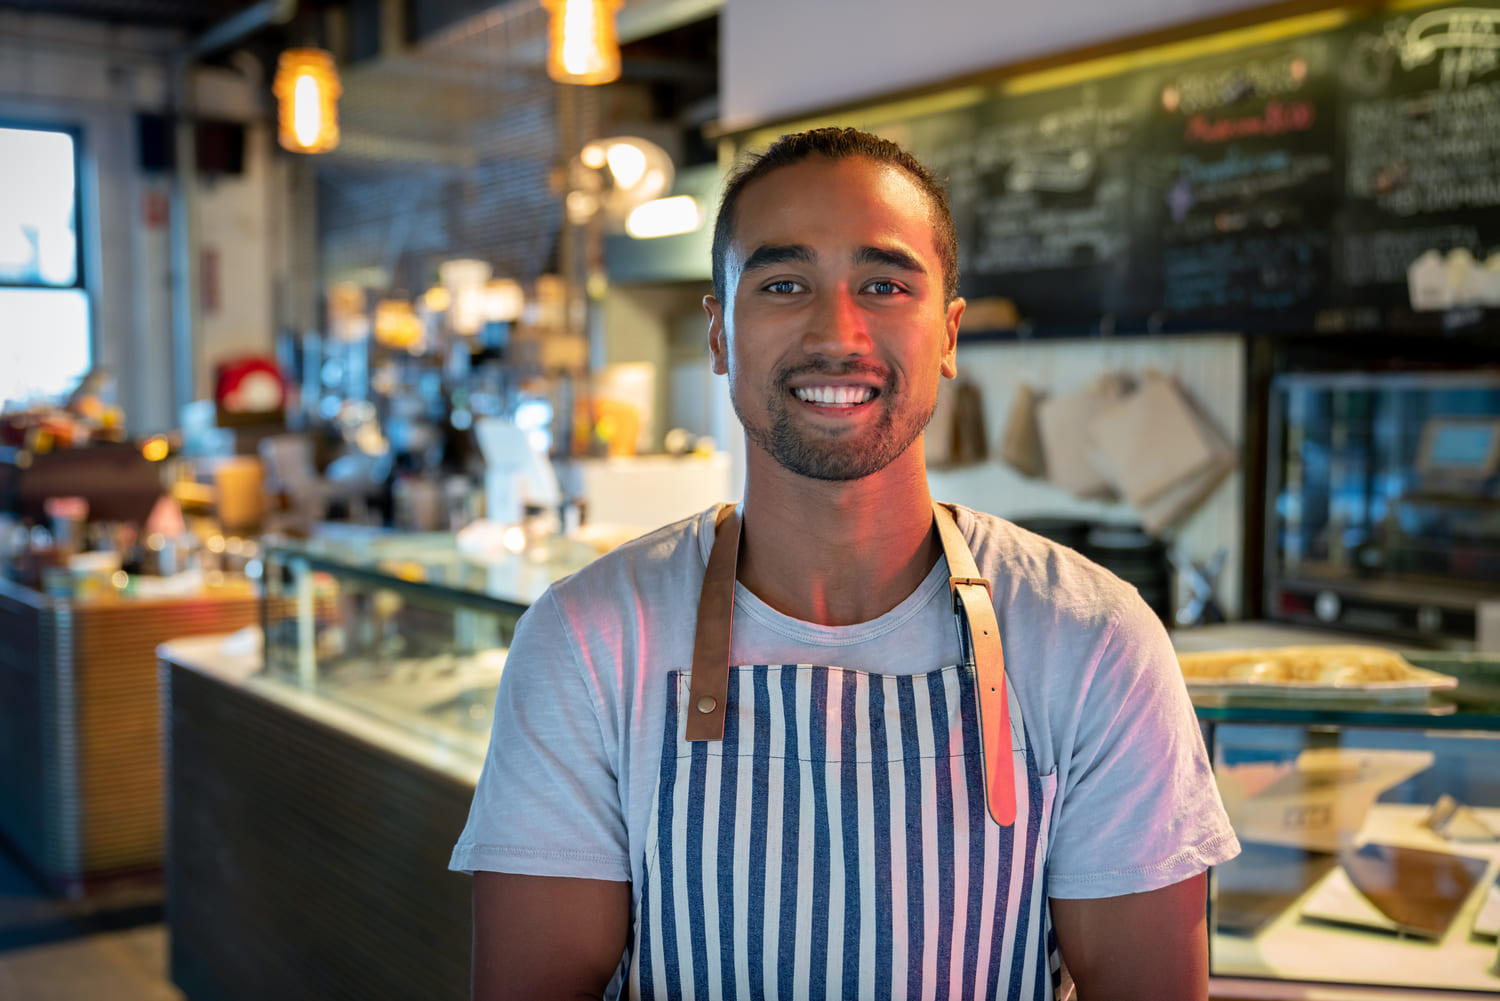 Cafe worker smiling